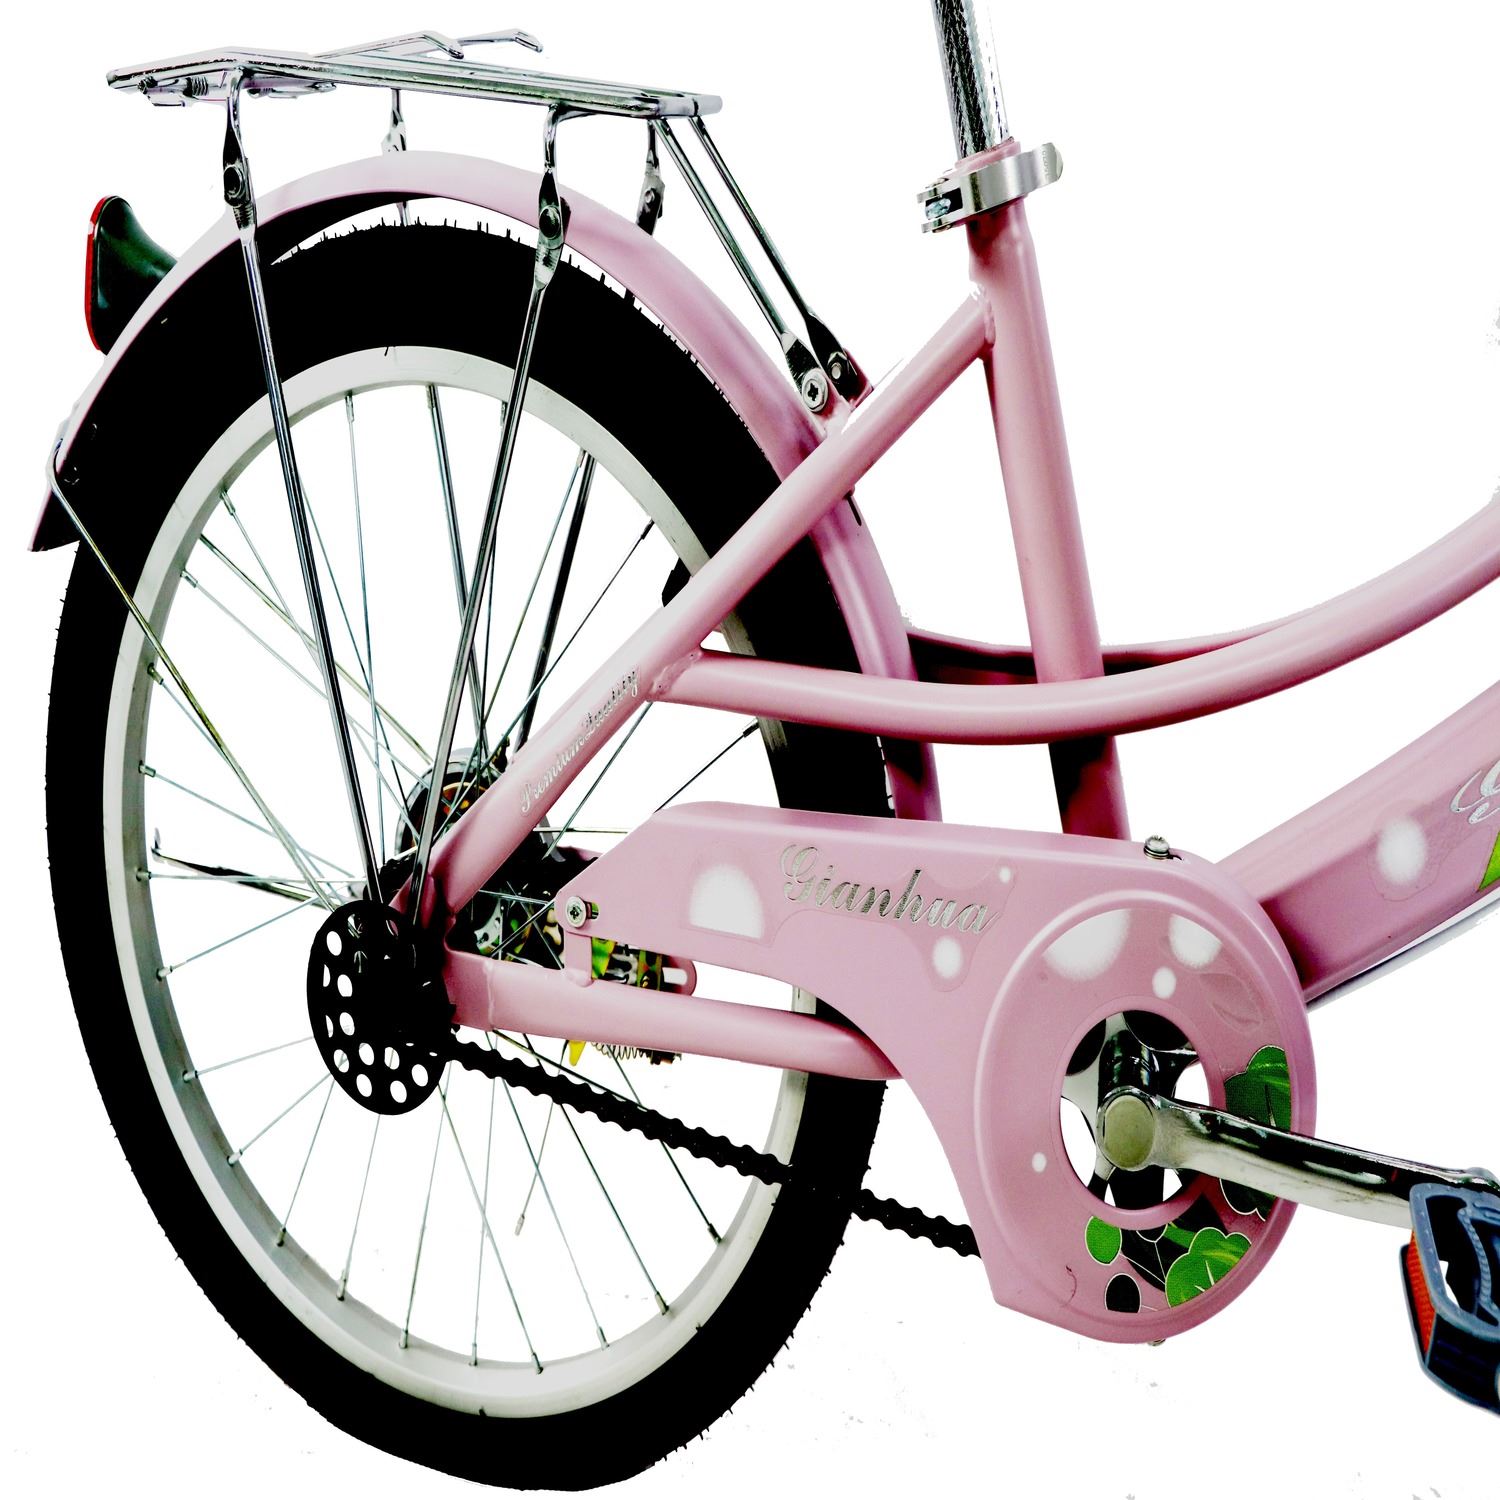 XCLUSIVE Bicicleta Paseo Niña Aro 20 rosado